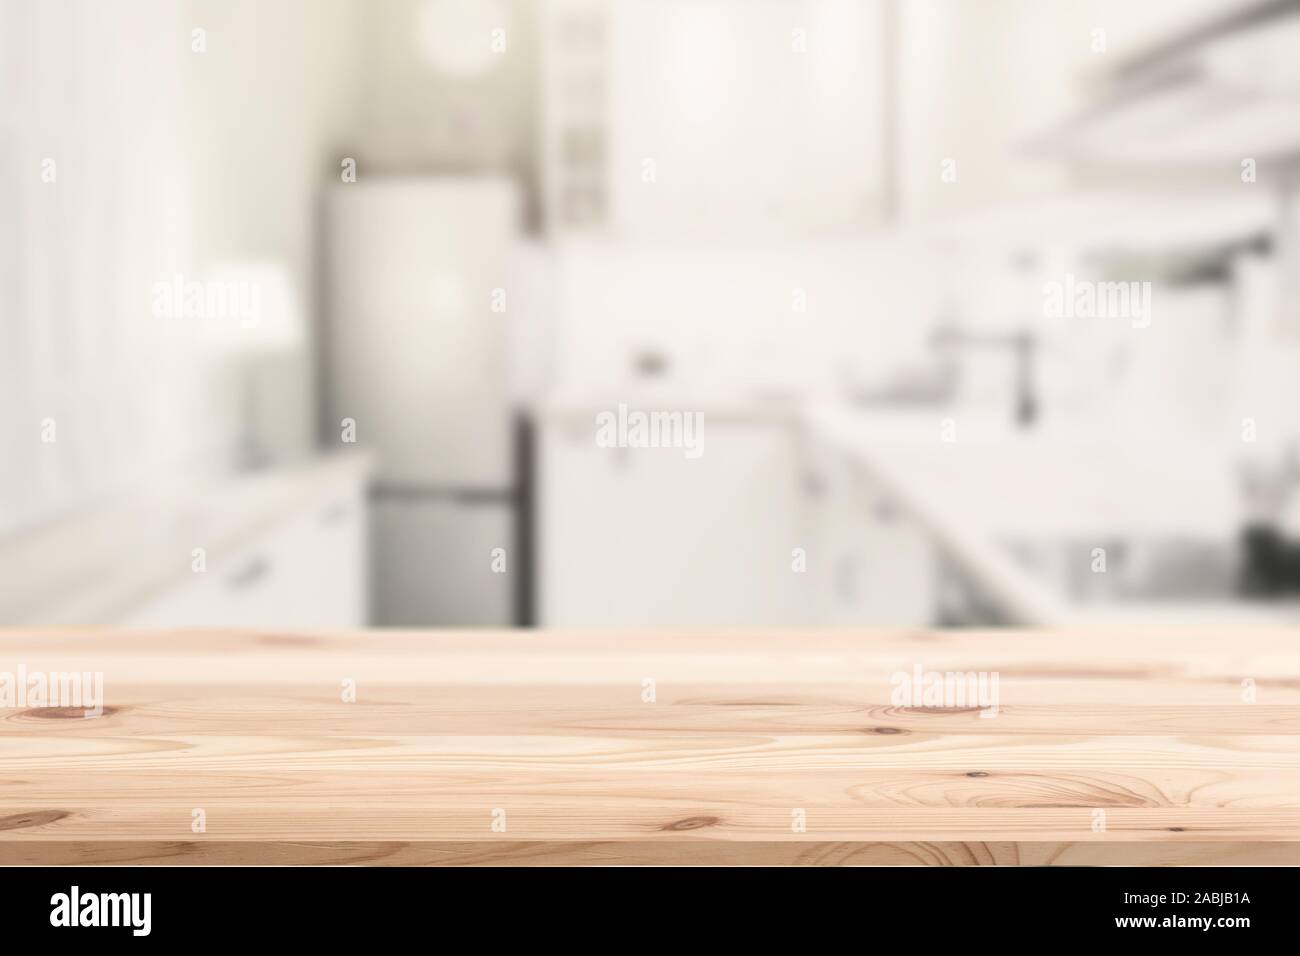 Holz- table top Insel mit blur Küche home Hintergrund für Produkte montage Werbung. Stockfoto